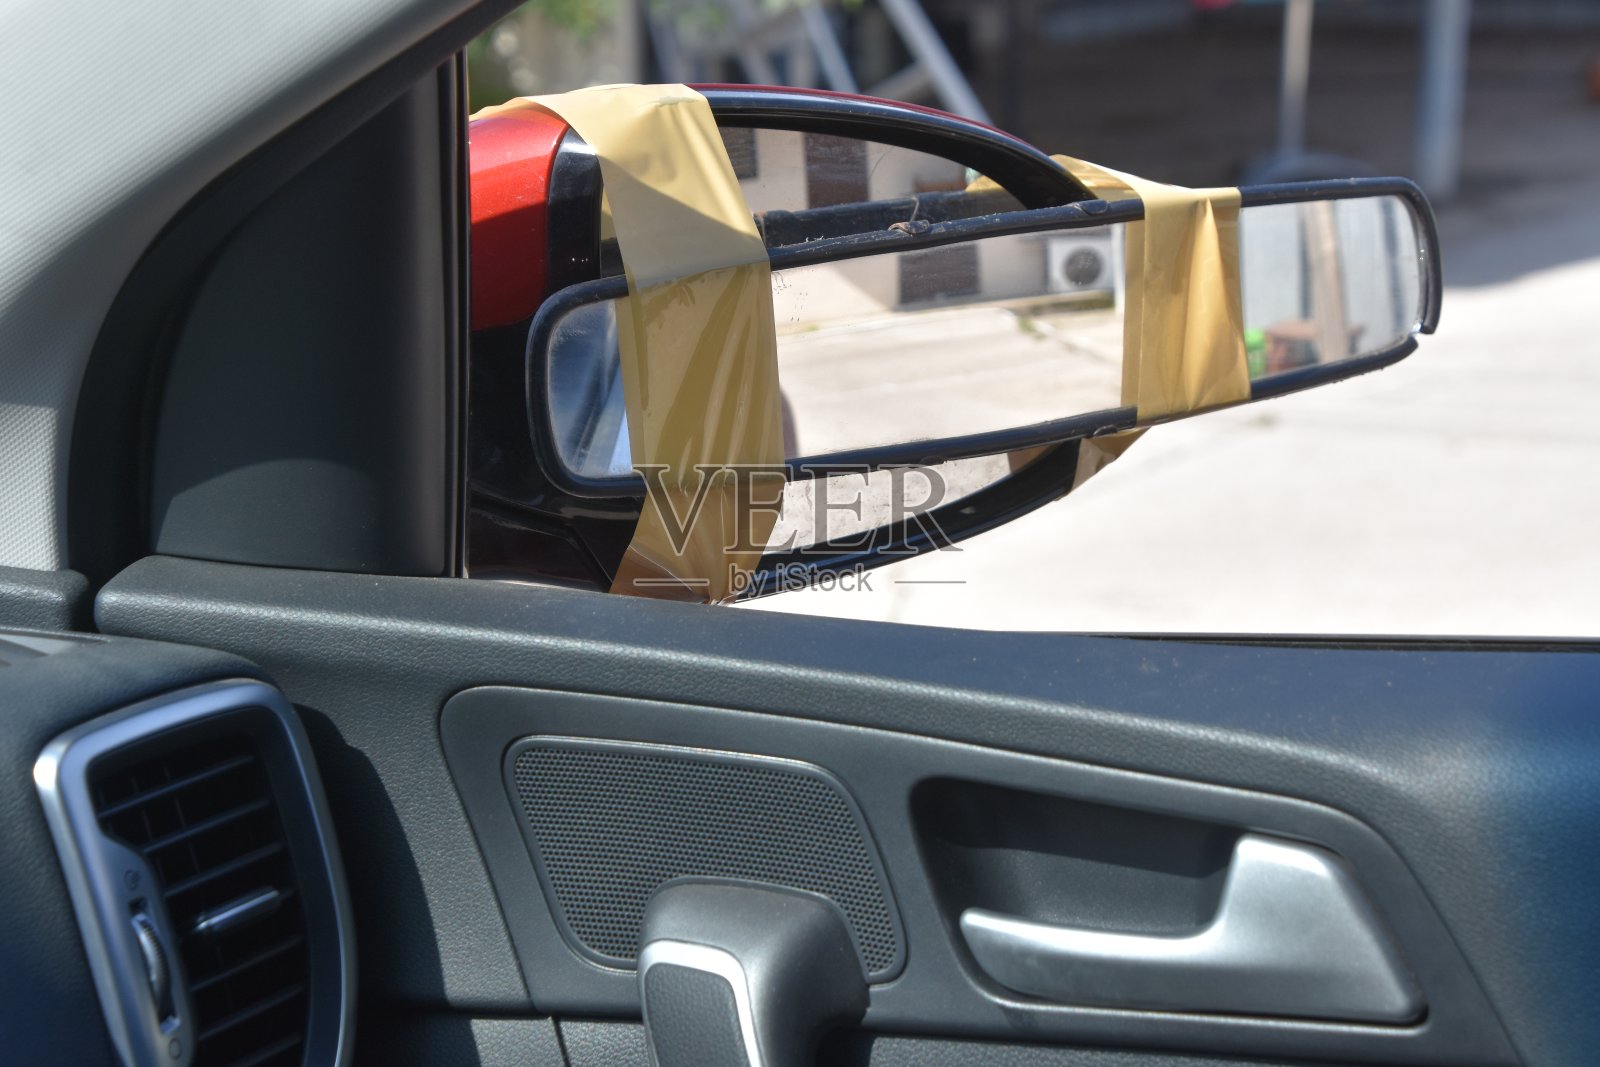 有趣的即兴创作，把镜子贴在一辆车的侧视镜上照片摄影图片